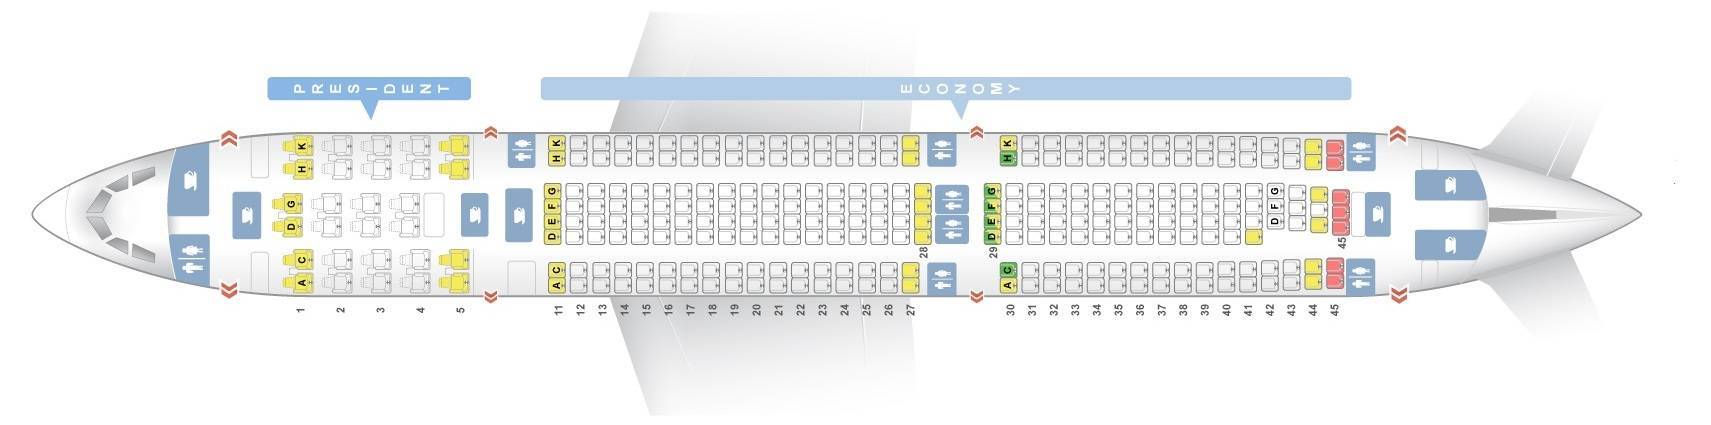 Схема салона Boeing 777 300 ER